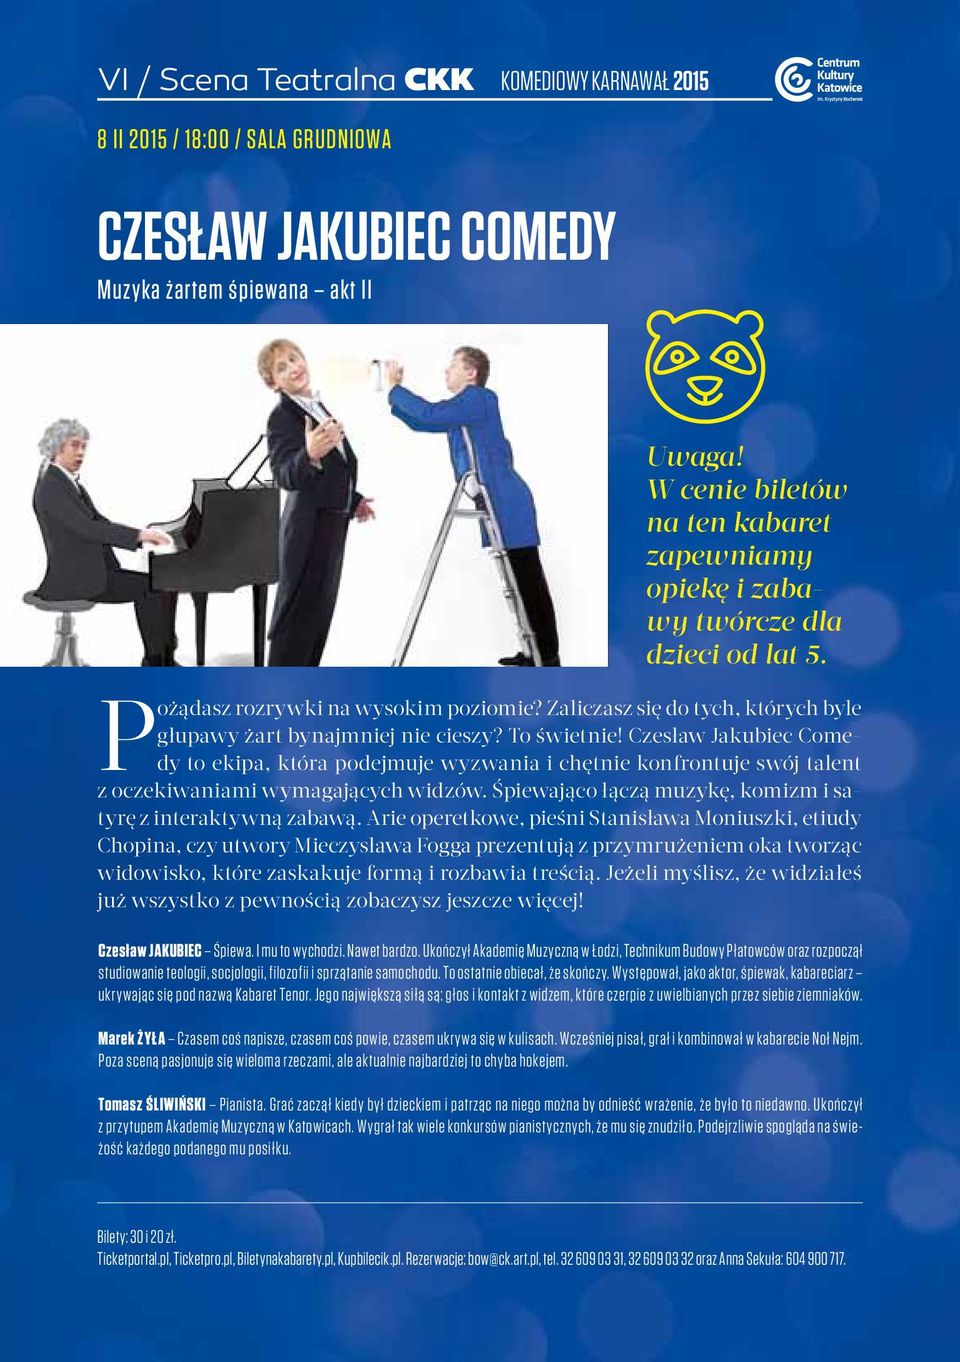 To świetnie! Czesław Jakubiec Comedy to ekipa, która podejmuje wyzwania i chętnie konfrontuje swój talent z oczekiwaniami wymagających widzów.